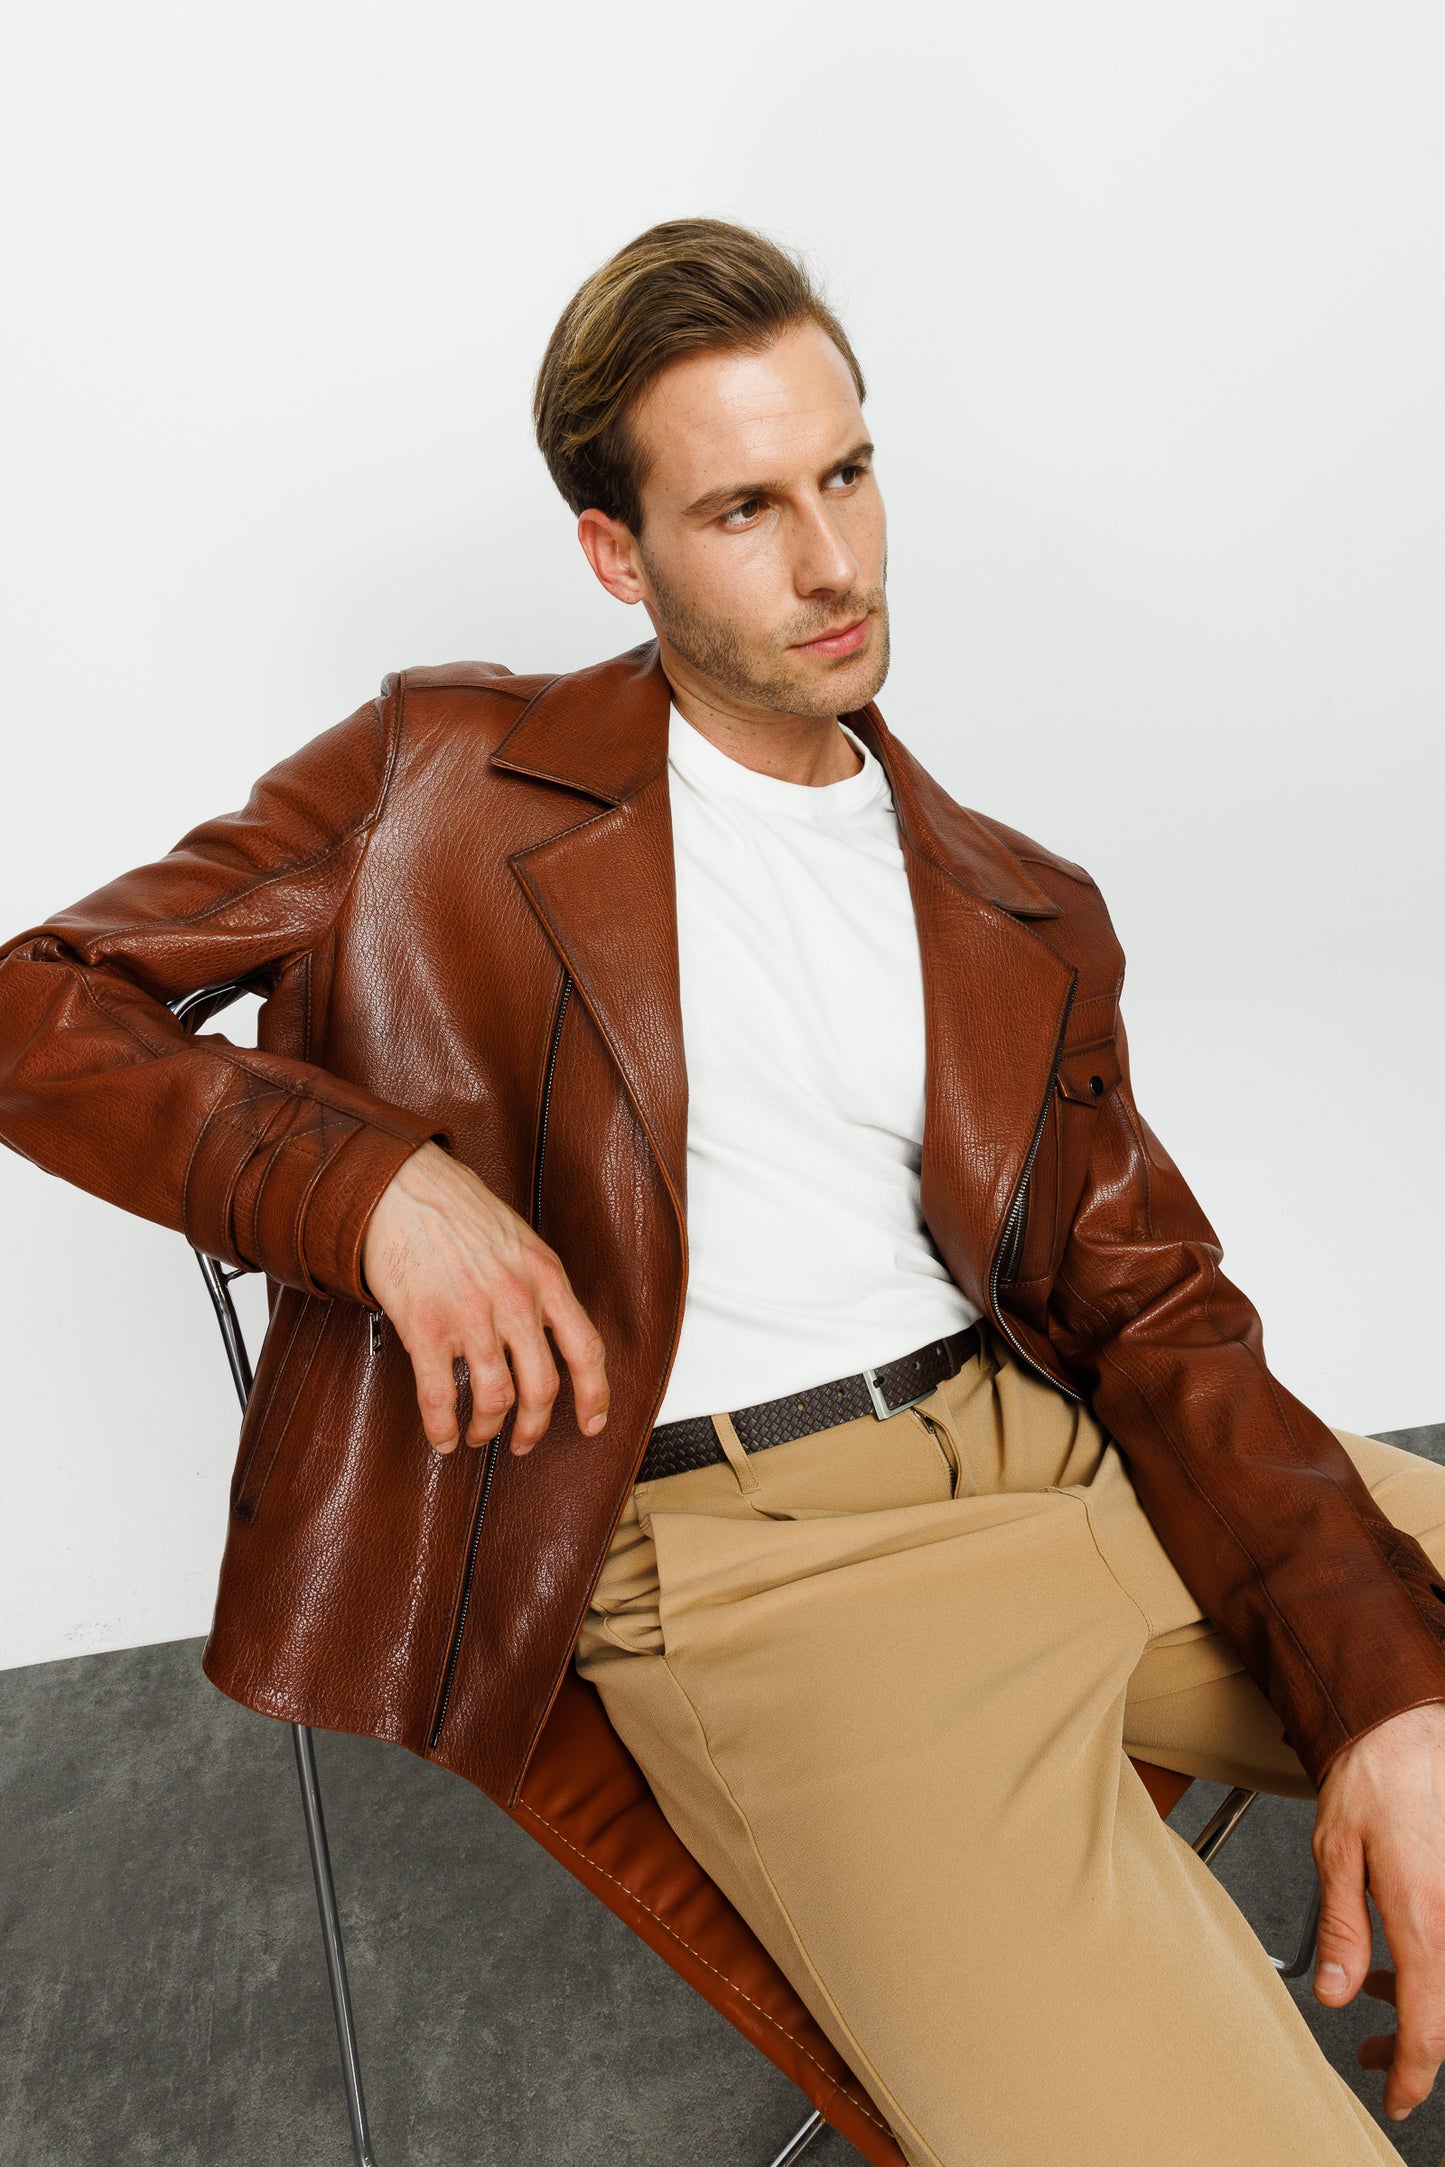 The Monola Tan Leather Men Jacket